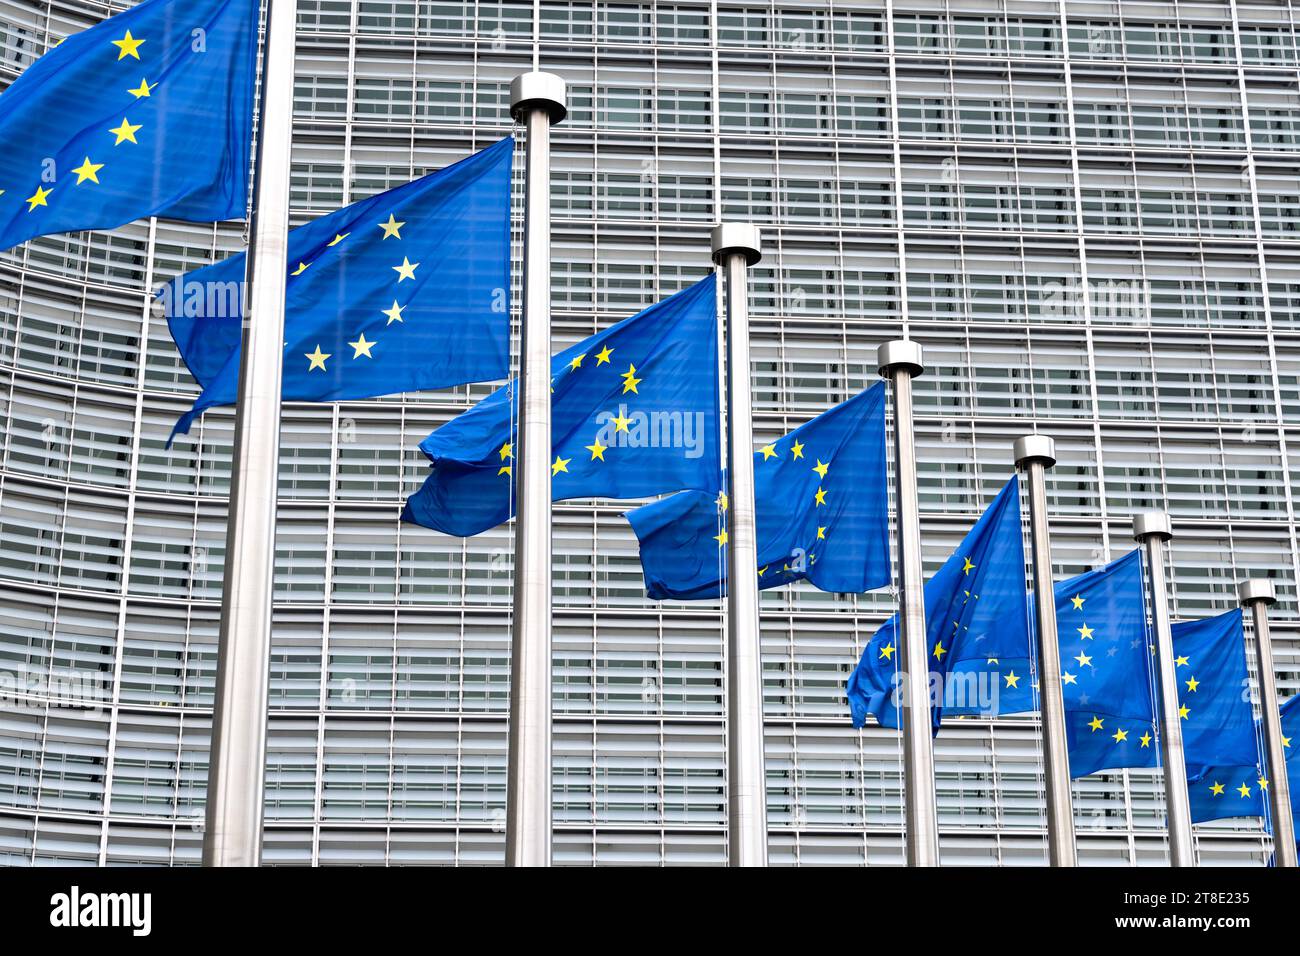 Bandiere dell'Unione europea al di fuori della sede centrale della Commissione europea le Berlaymont, Bruxelles, Belgio Foto Stock